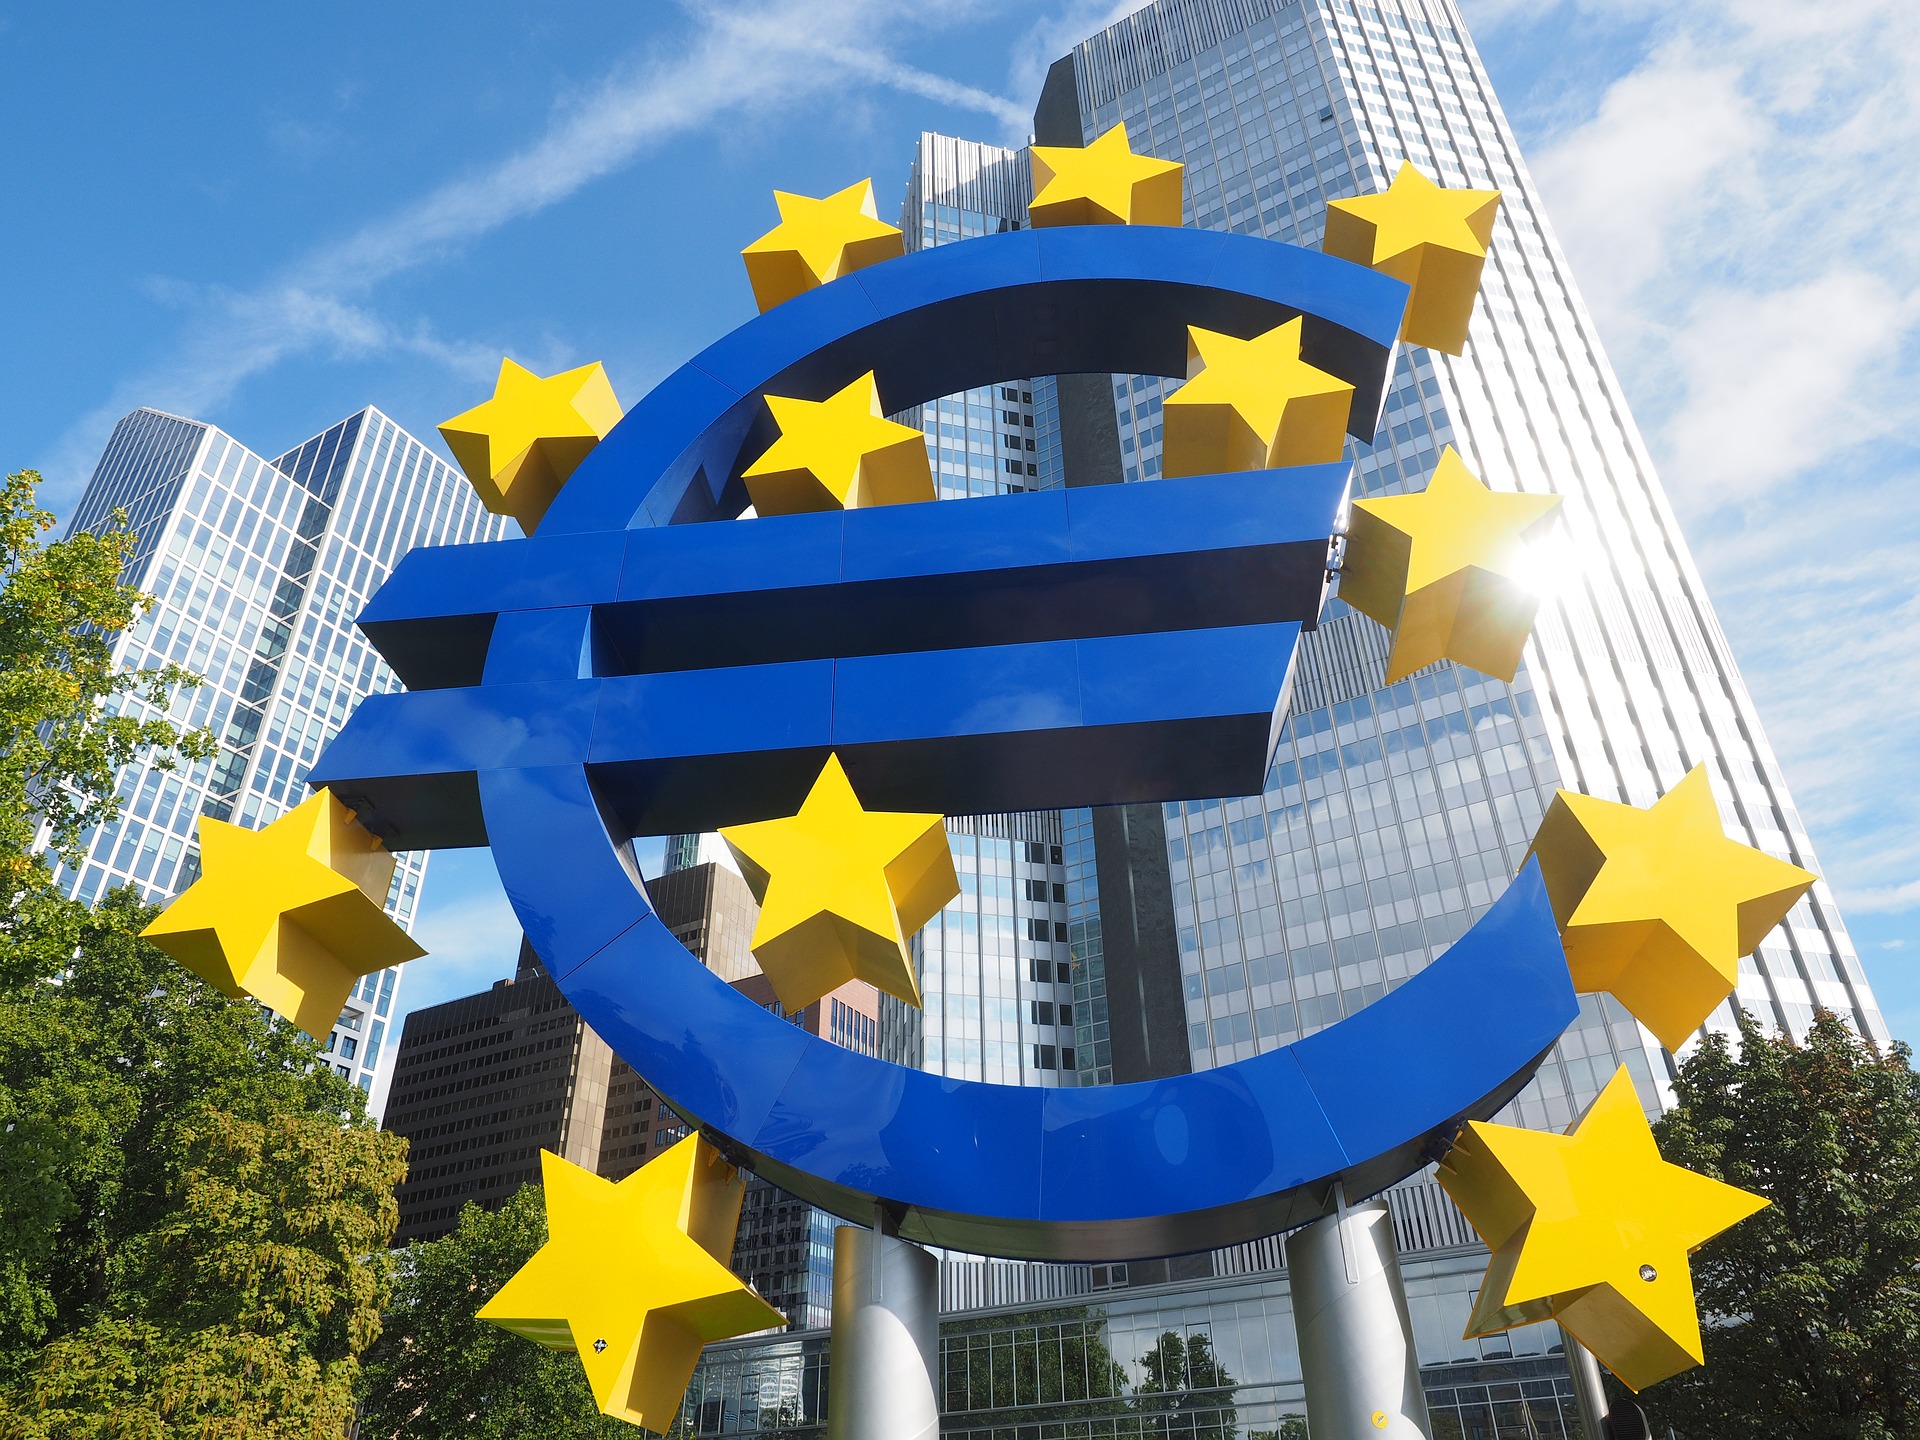 ECB rate hike